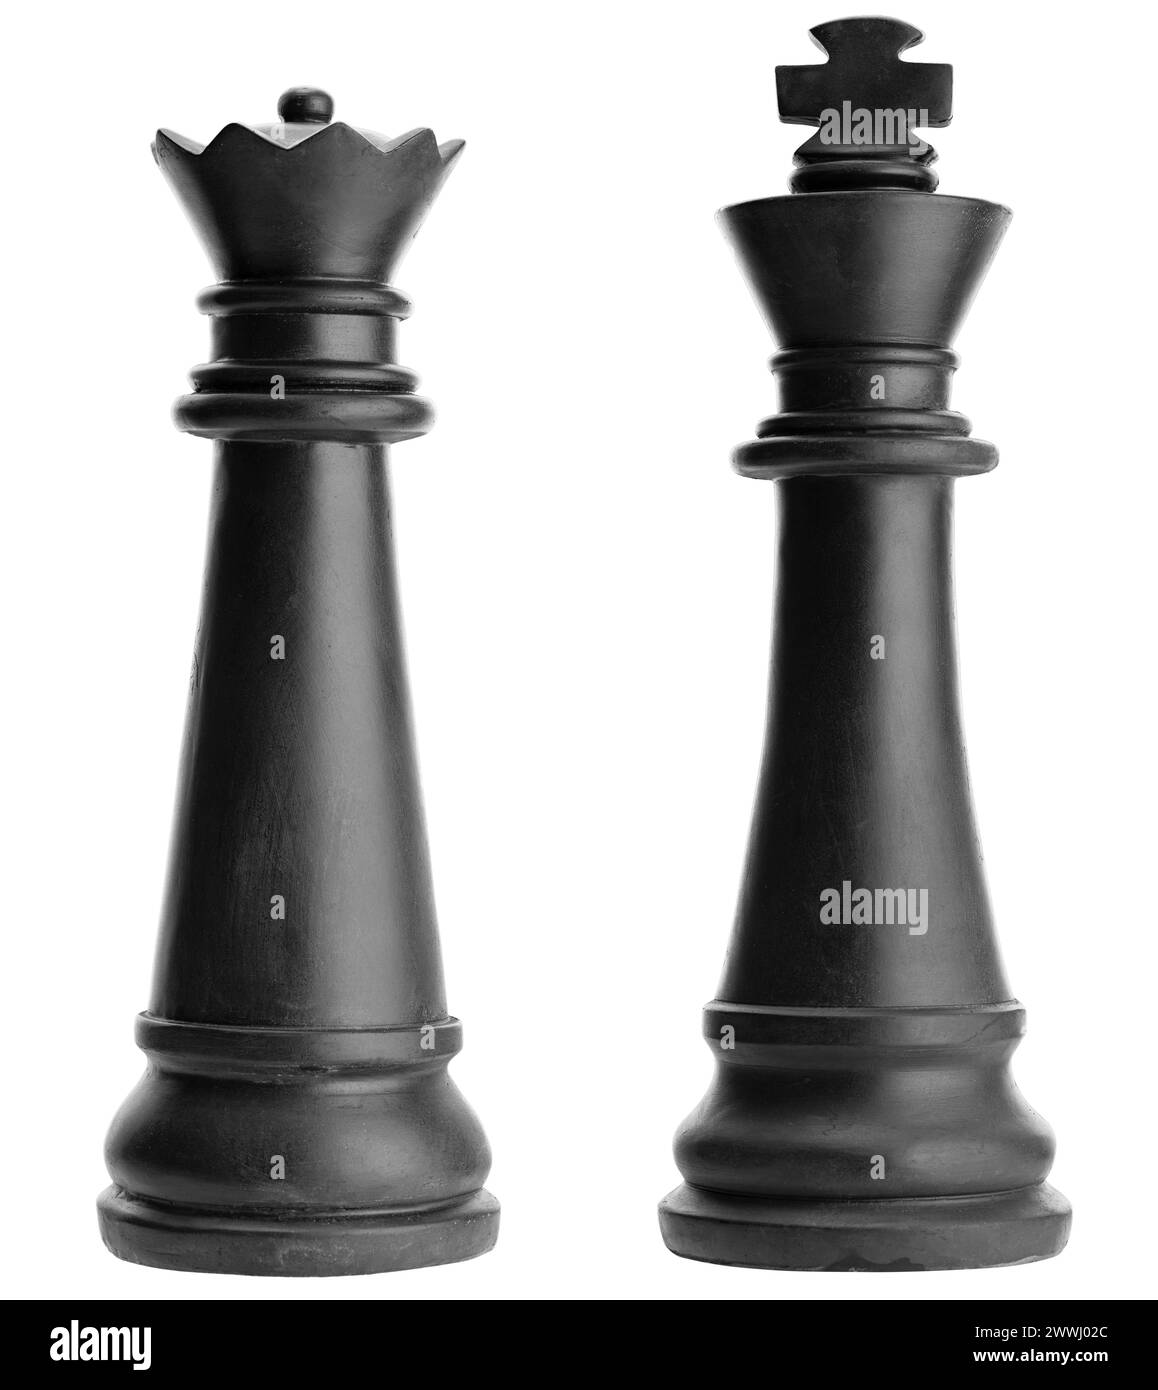 King et Queen pièce d'échecs noire isolé sur fond blanc King et Queen pièce d'échecs noire isolé sur fond blanc King et Queen Black Chess pi Banque D'Images